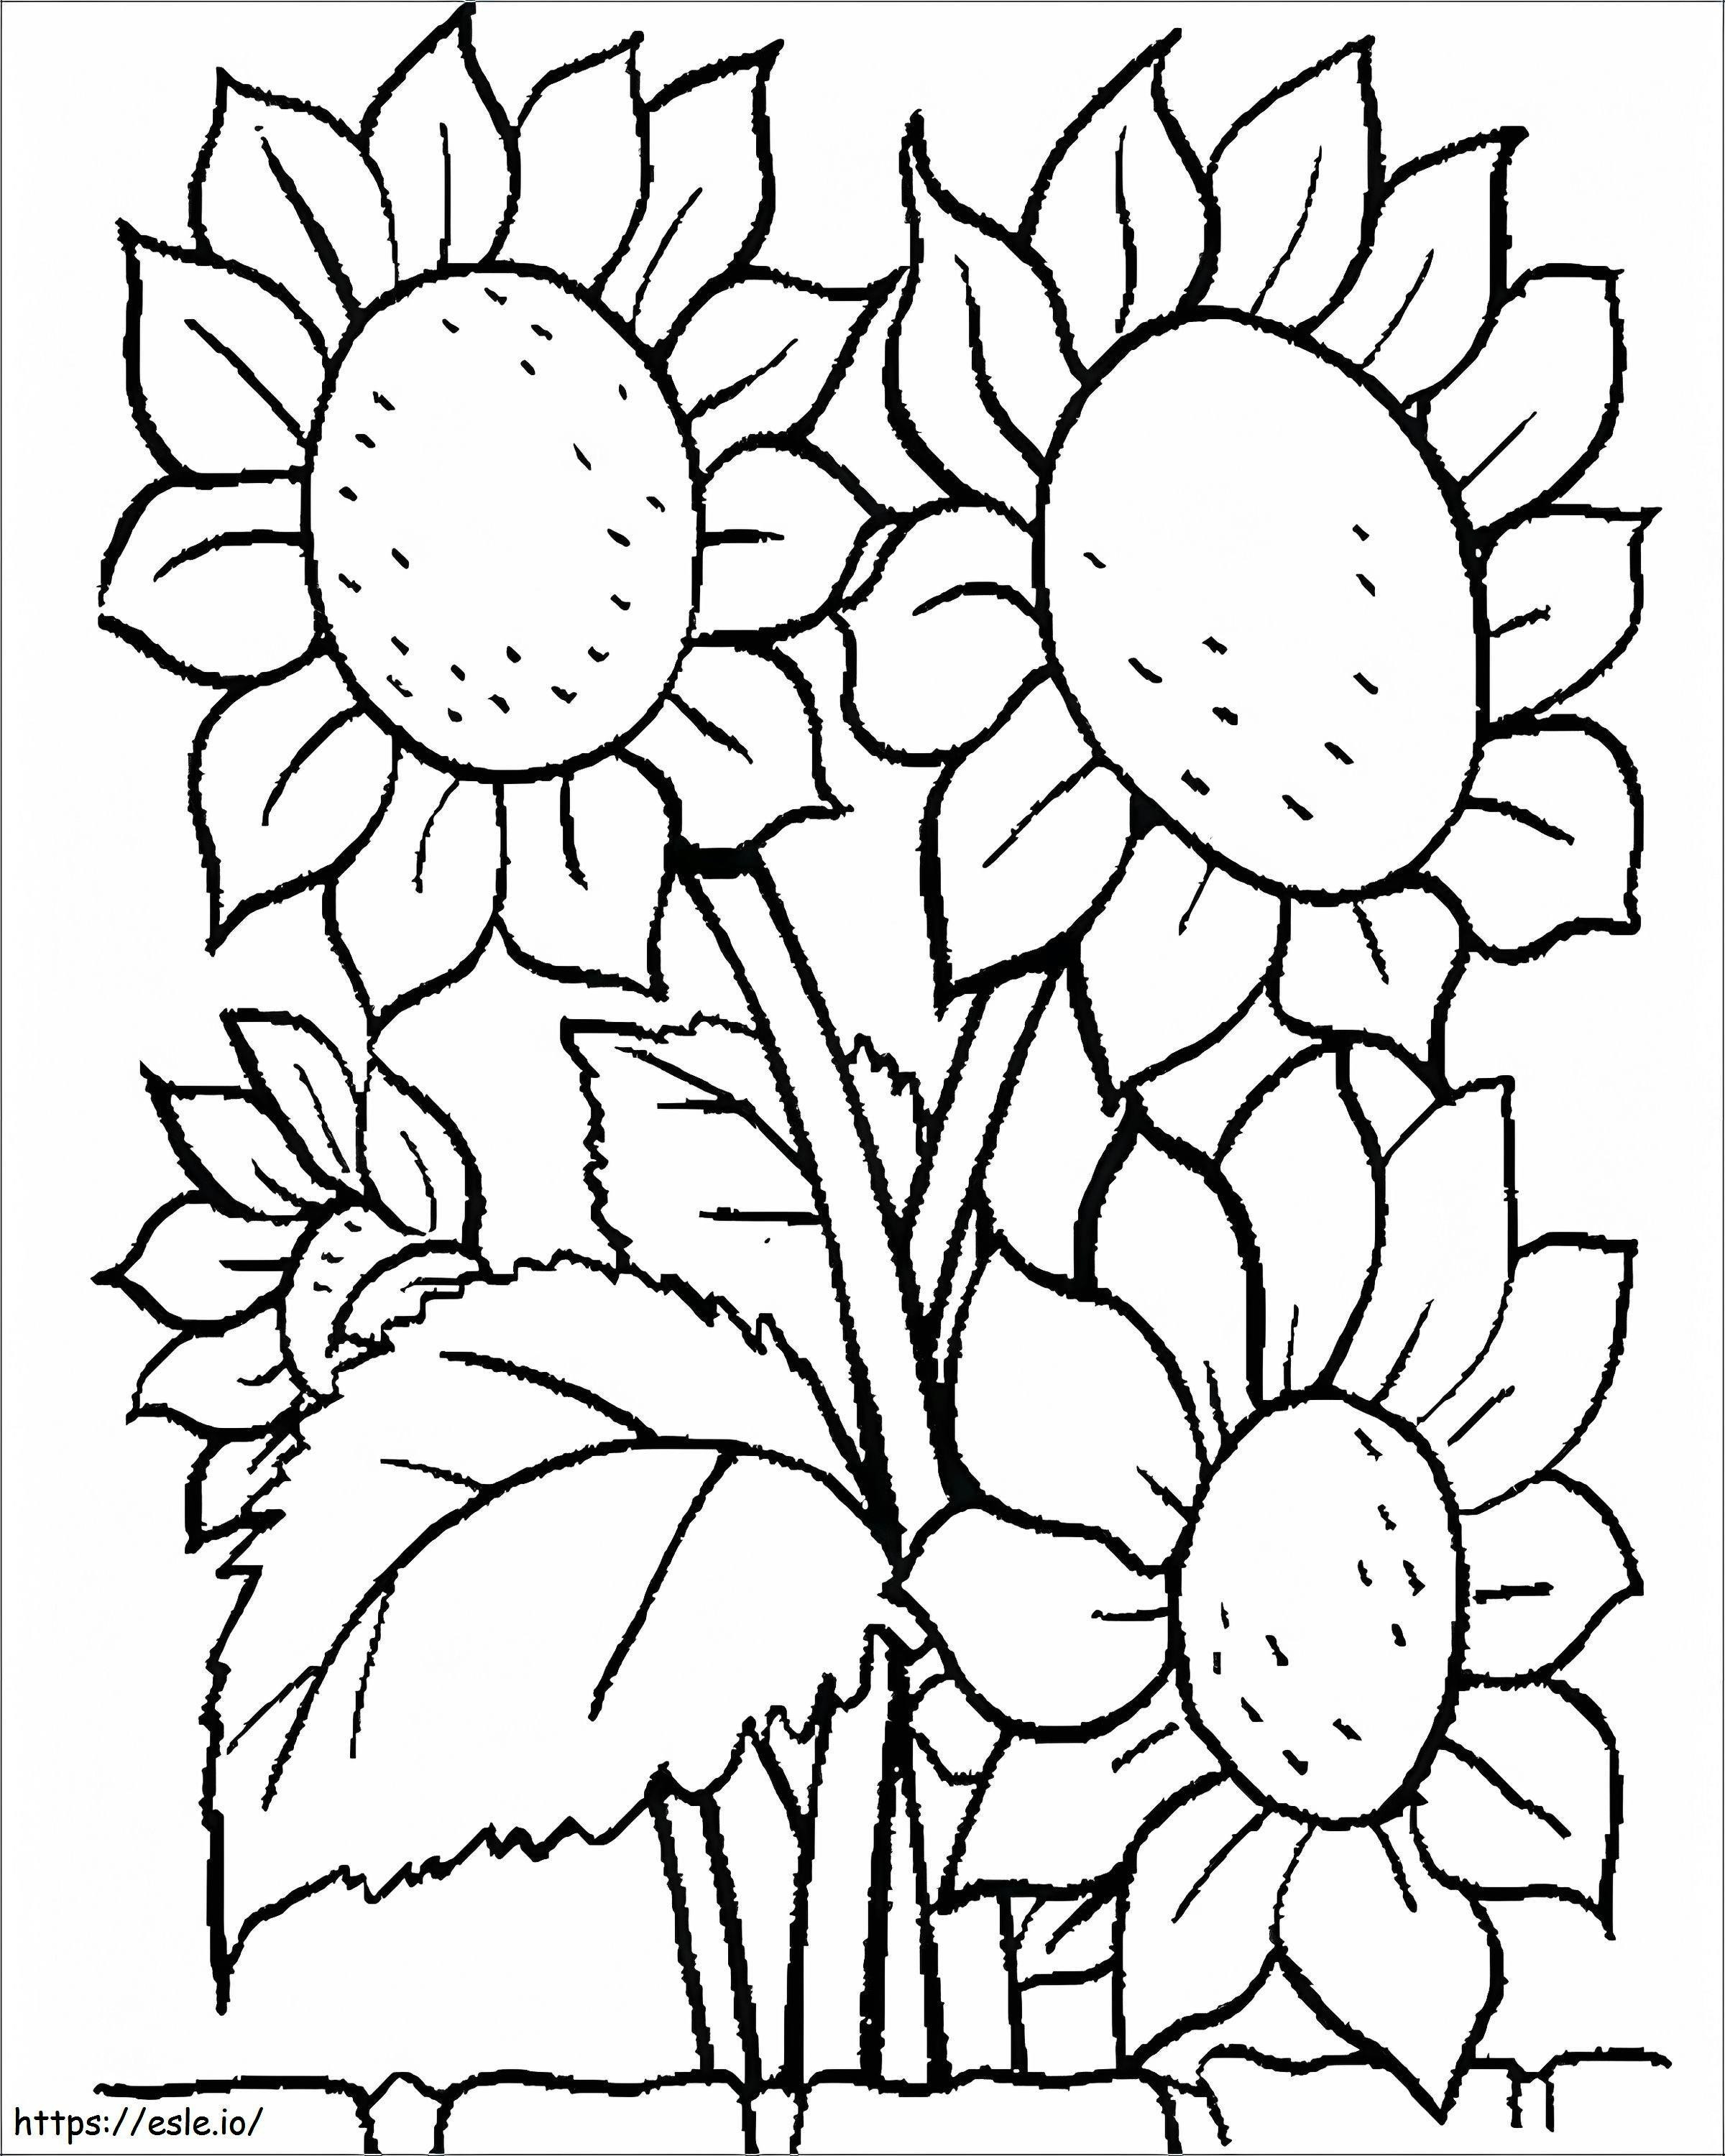 1539919156 Arkusze do kolorowania kwiatów dla przedszkolaków Łatwe do wydrukowania Bezpłatne kwiatowe obrazki do kolorowania Kwiaty do wydruku Kolorowanki kwiatowe do wydrukowania Arkusze do kolorowania kwiatów dla Prescho kolorowanka